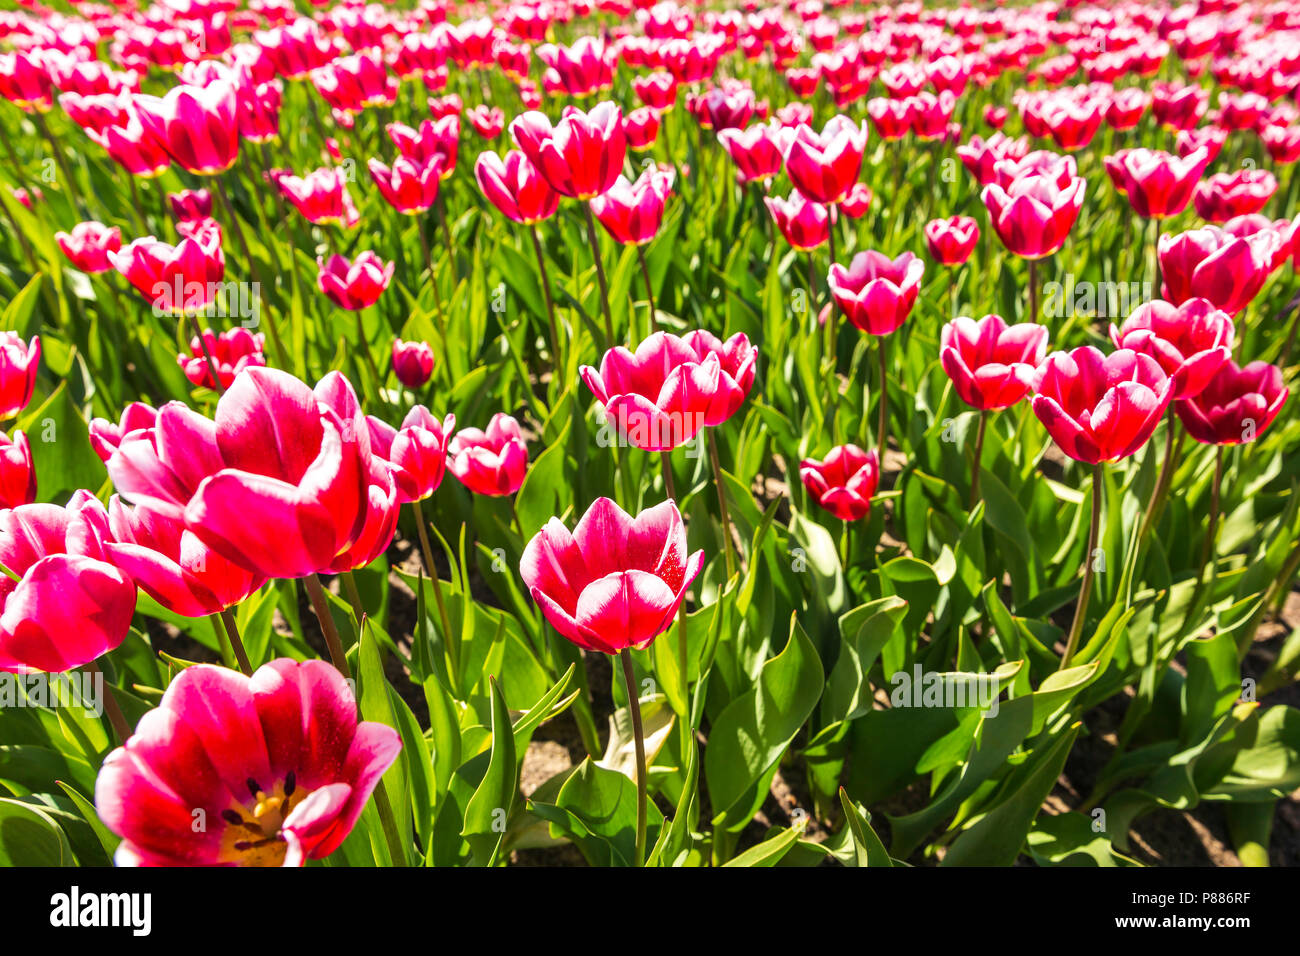 Nahaufnahme von roten und weißen geflammt Tulpen in einer holländischen Tulpen Feld Beet unter einem blauen Himmel während der Saison Frühjahr in Drenthe, Niederlande Stockfoto